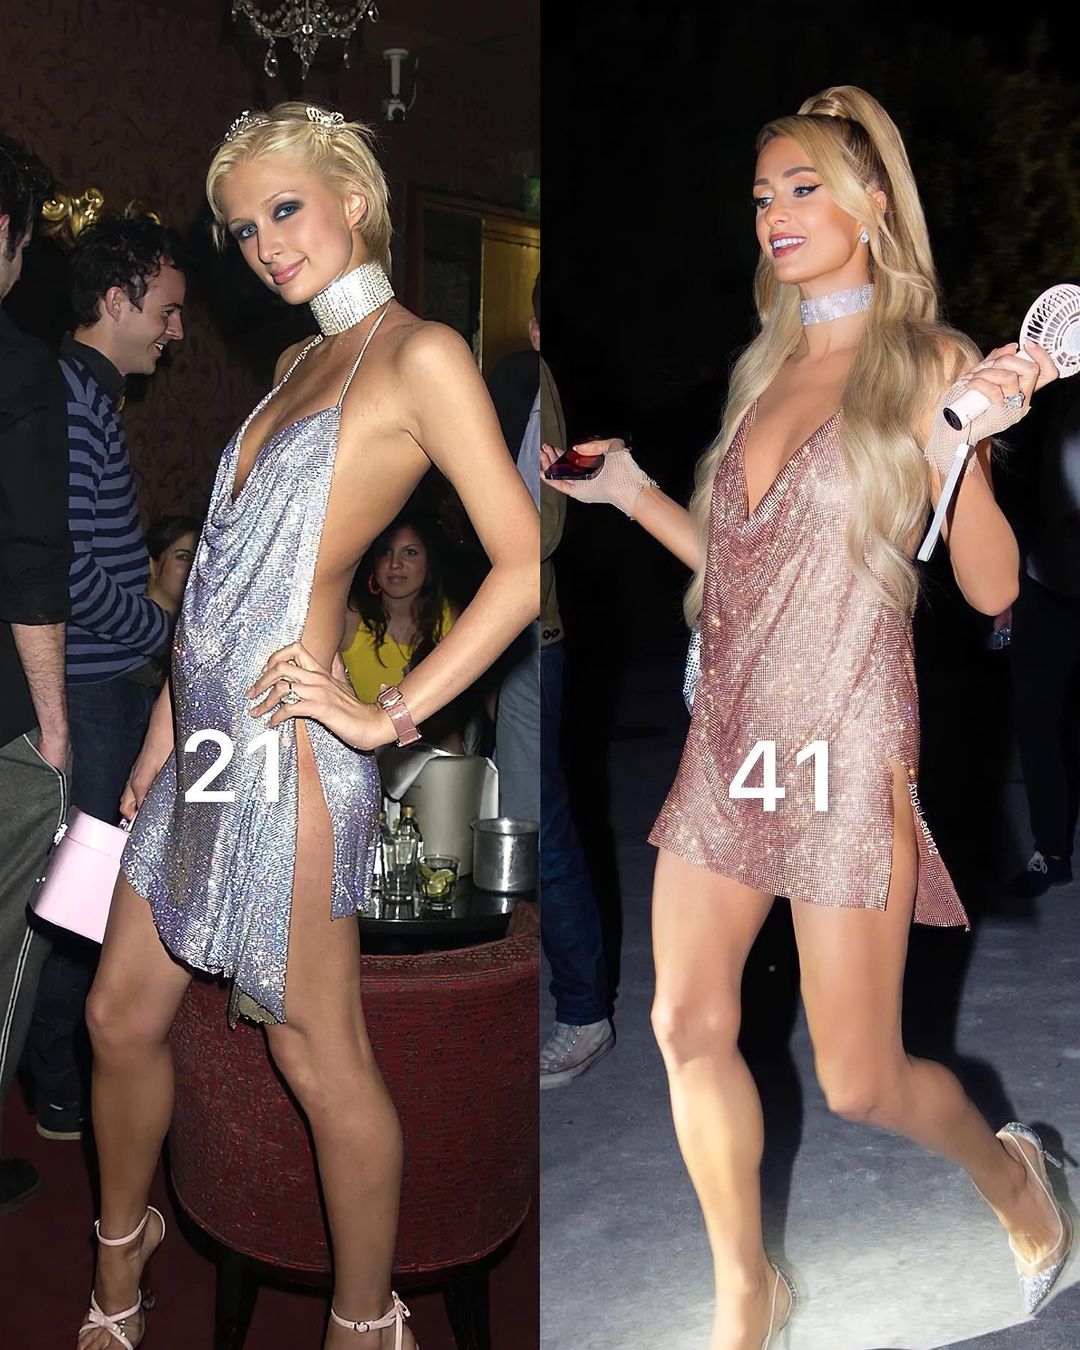 Chung tình như Paris Hilton: Dù 21, 36 hay 41 thì cũng đều nghiện 1 kiểu váy - Ảnh 3.